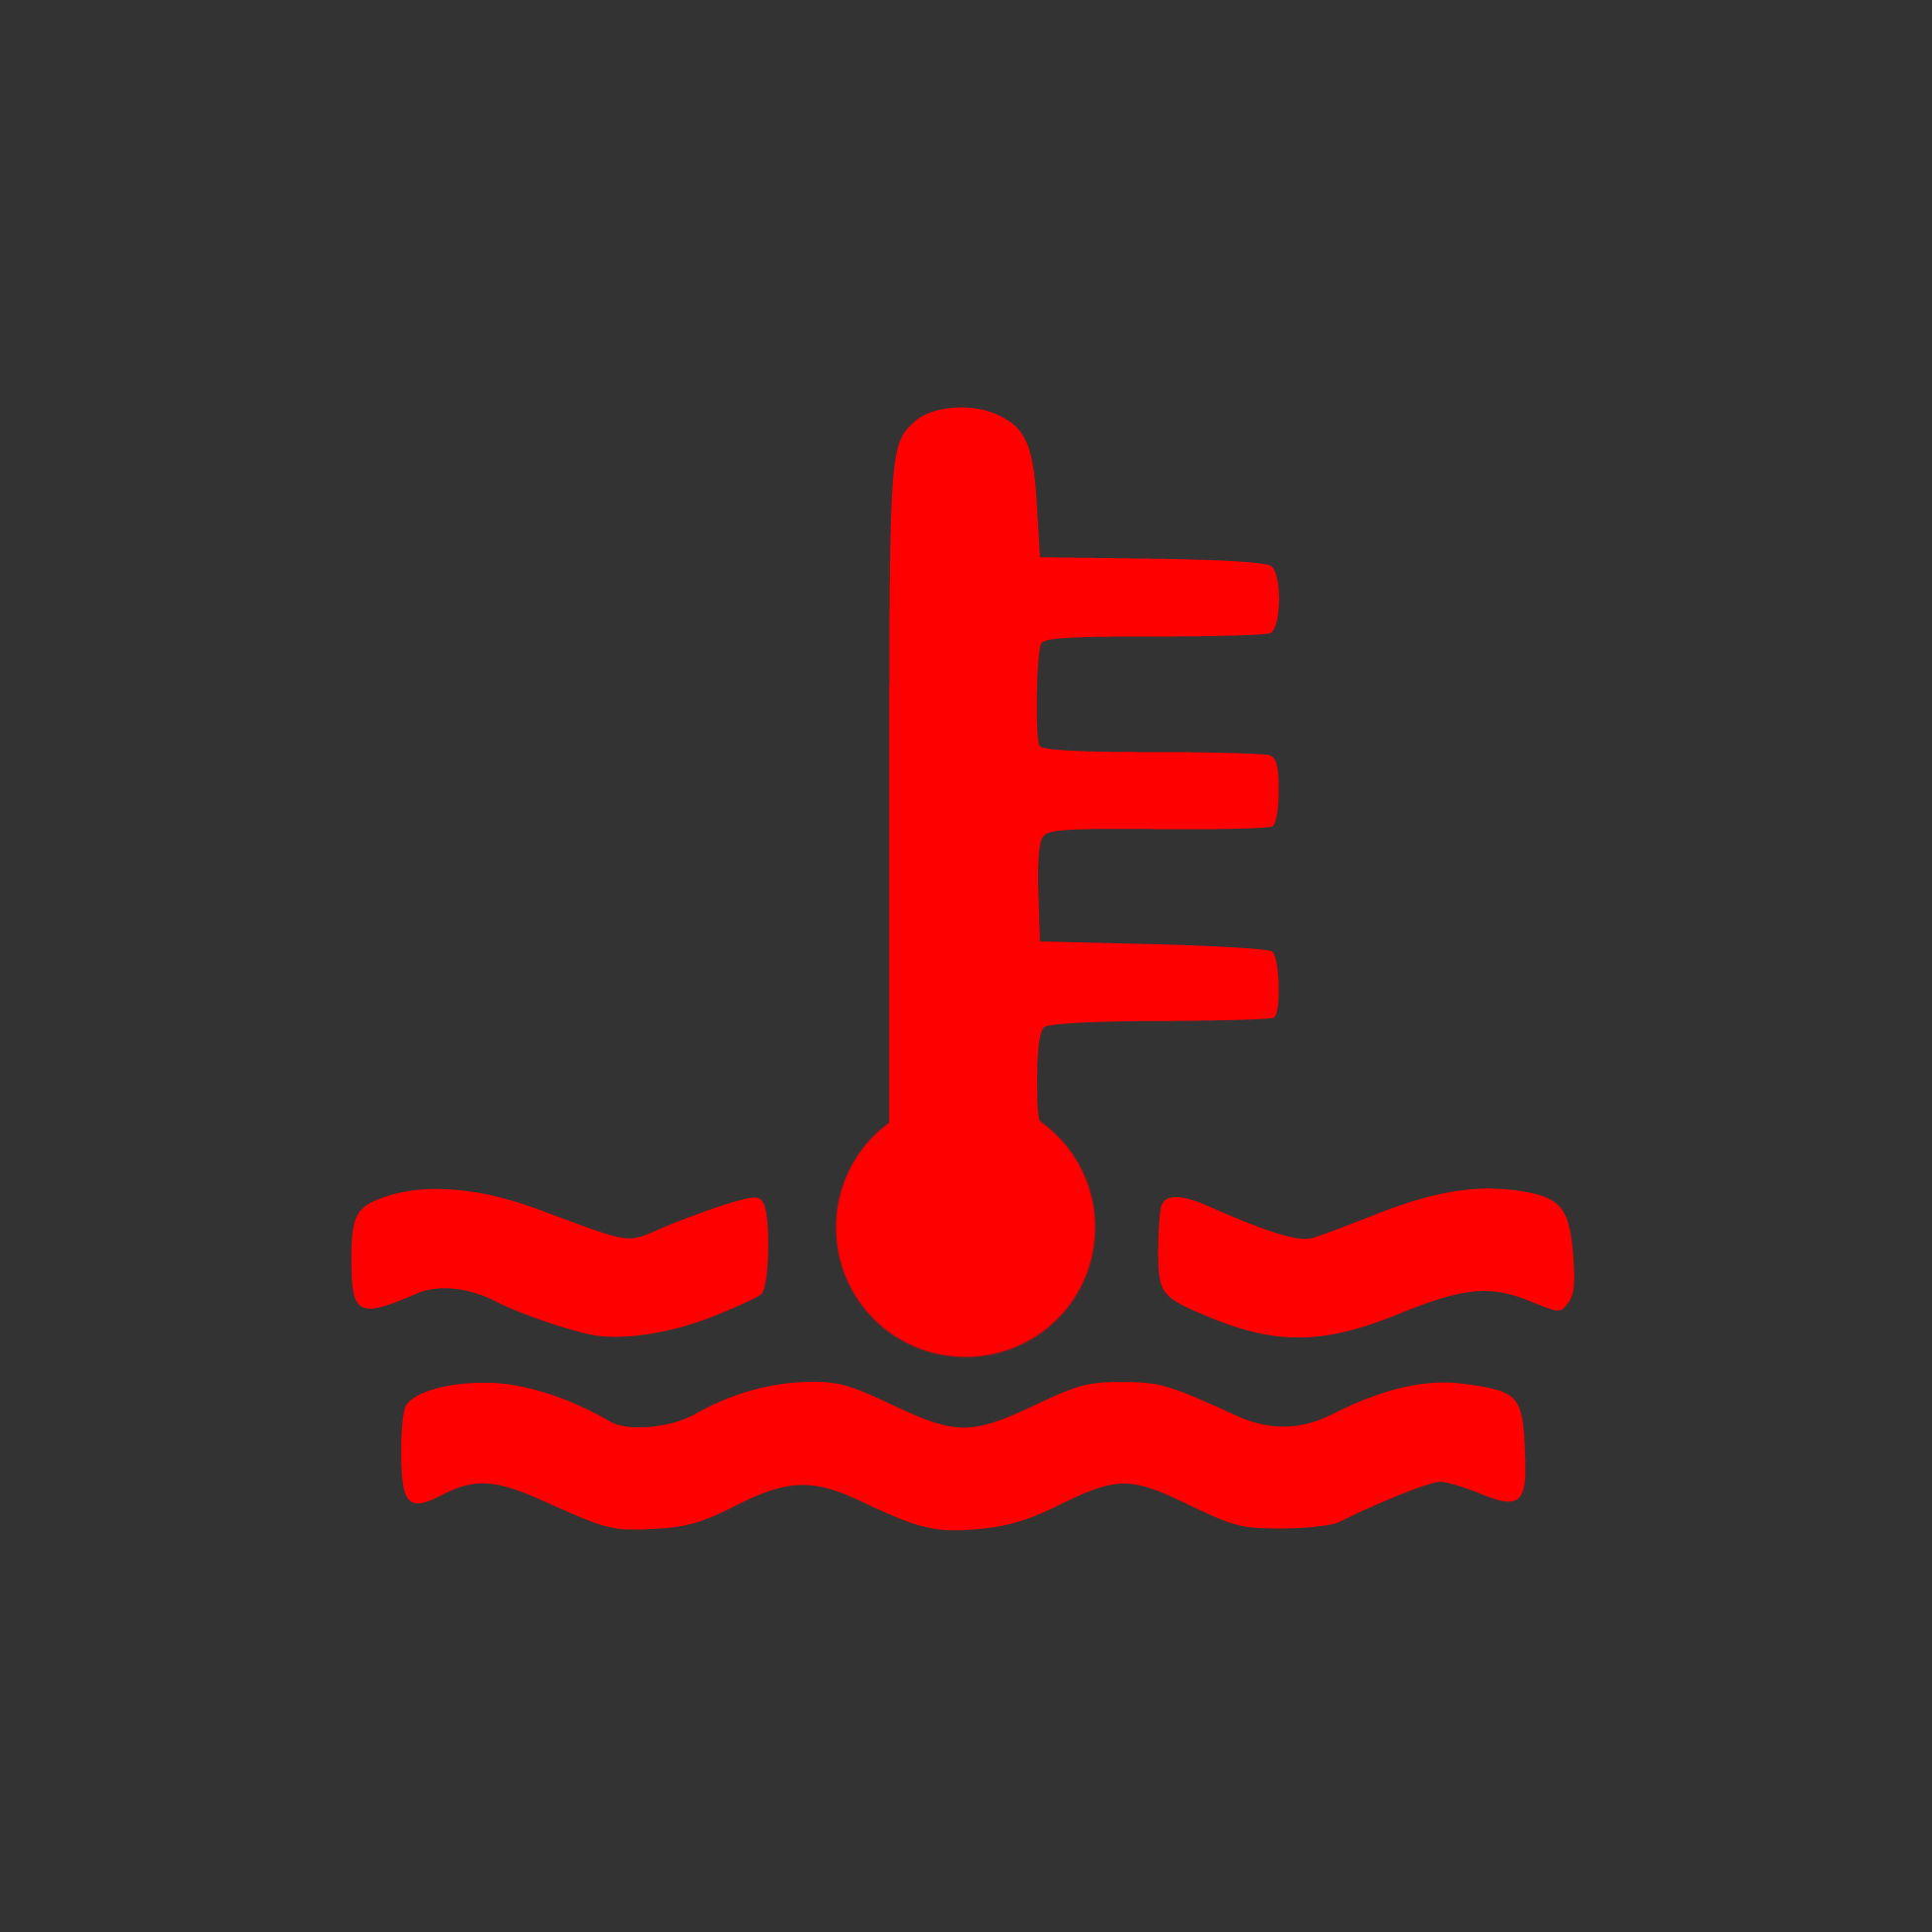 Piros hullámokon, hőmérő világít a műszerfalon